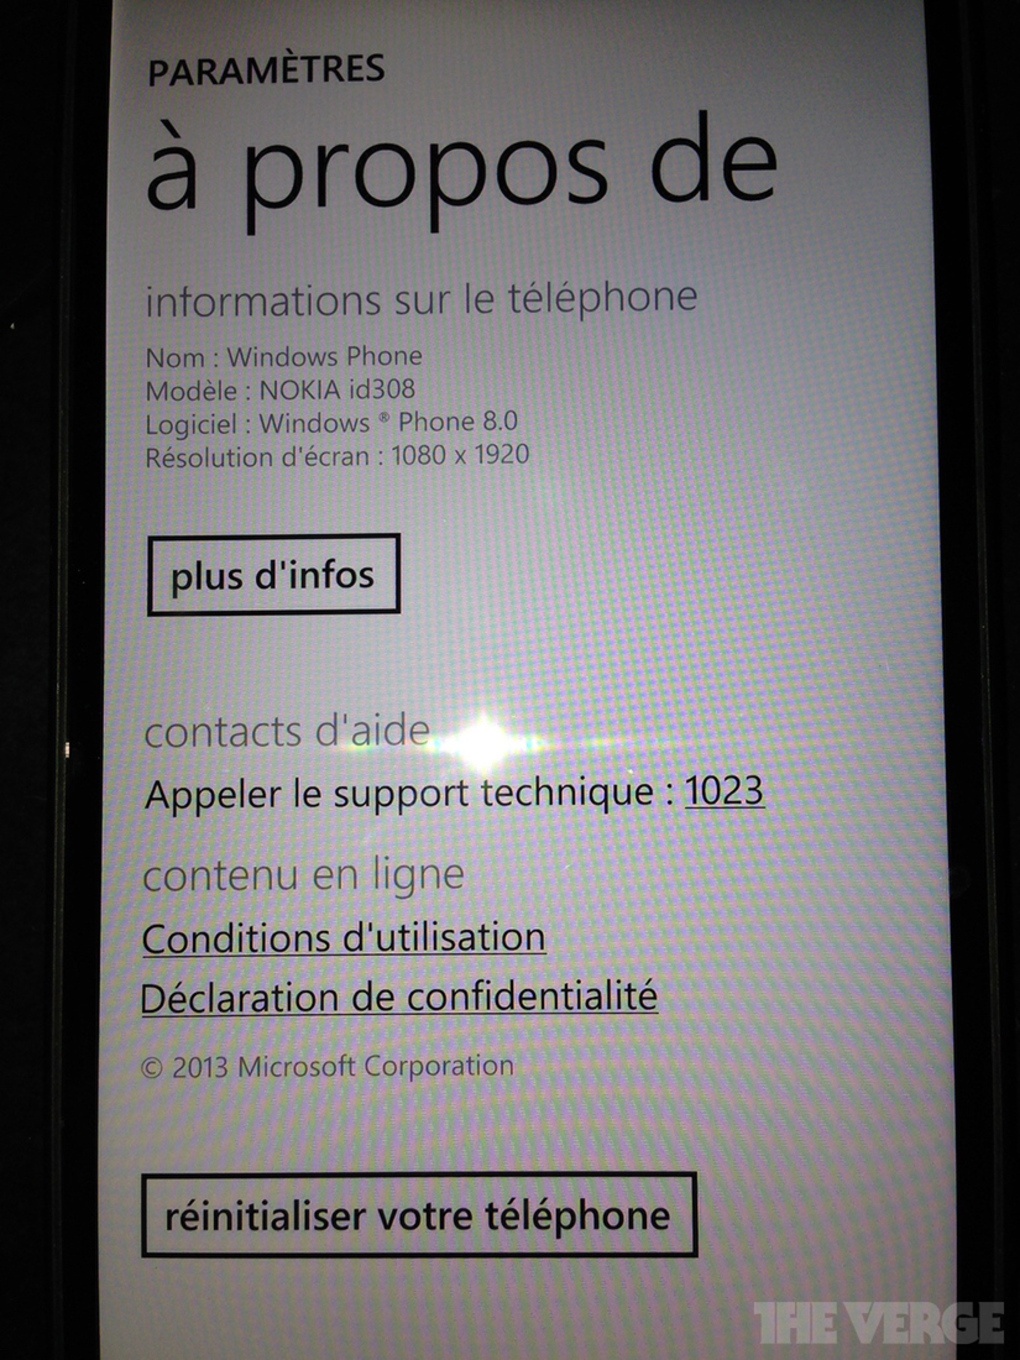 诺基亚Lumia 1520真机高清图片